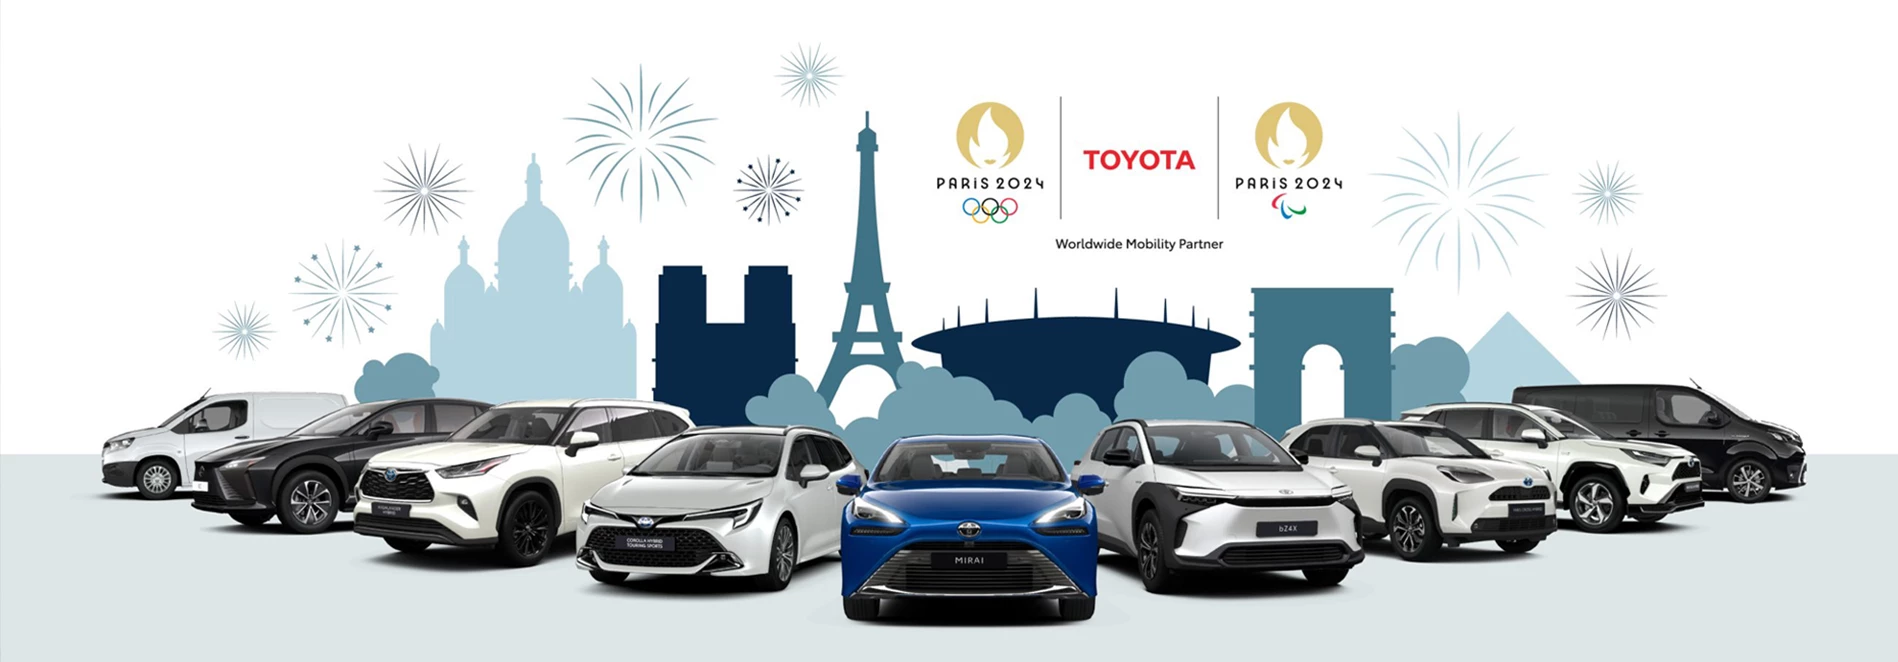 News Landing Image Toyota является официальным партнером Олимпийских и Паралимпийских игр 2024 года в Париже.